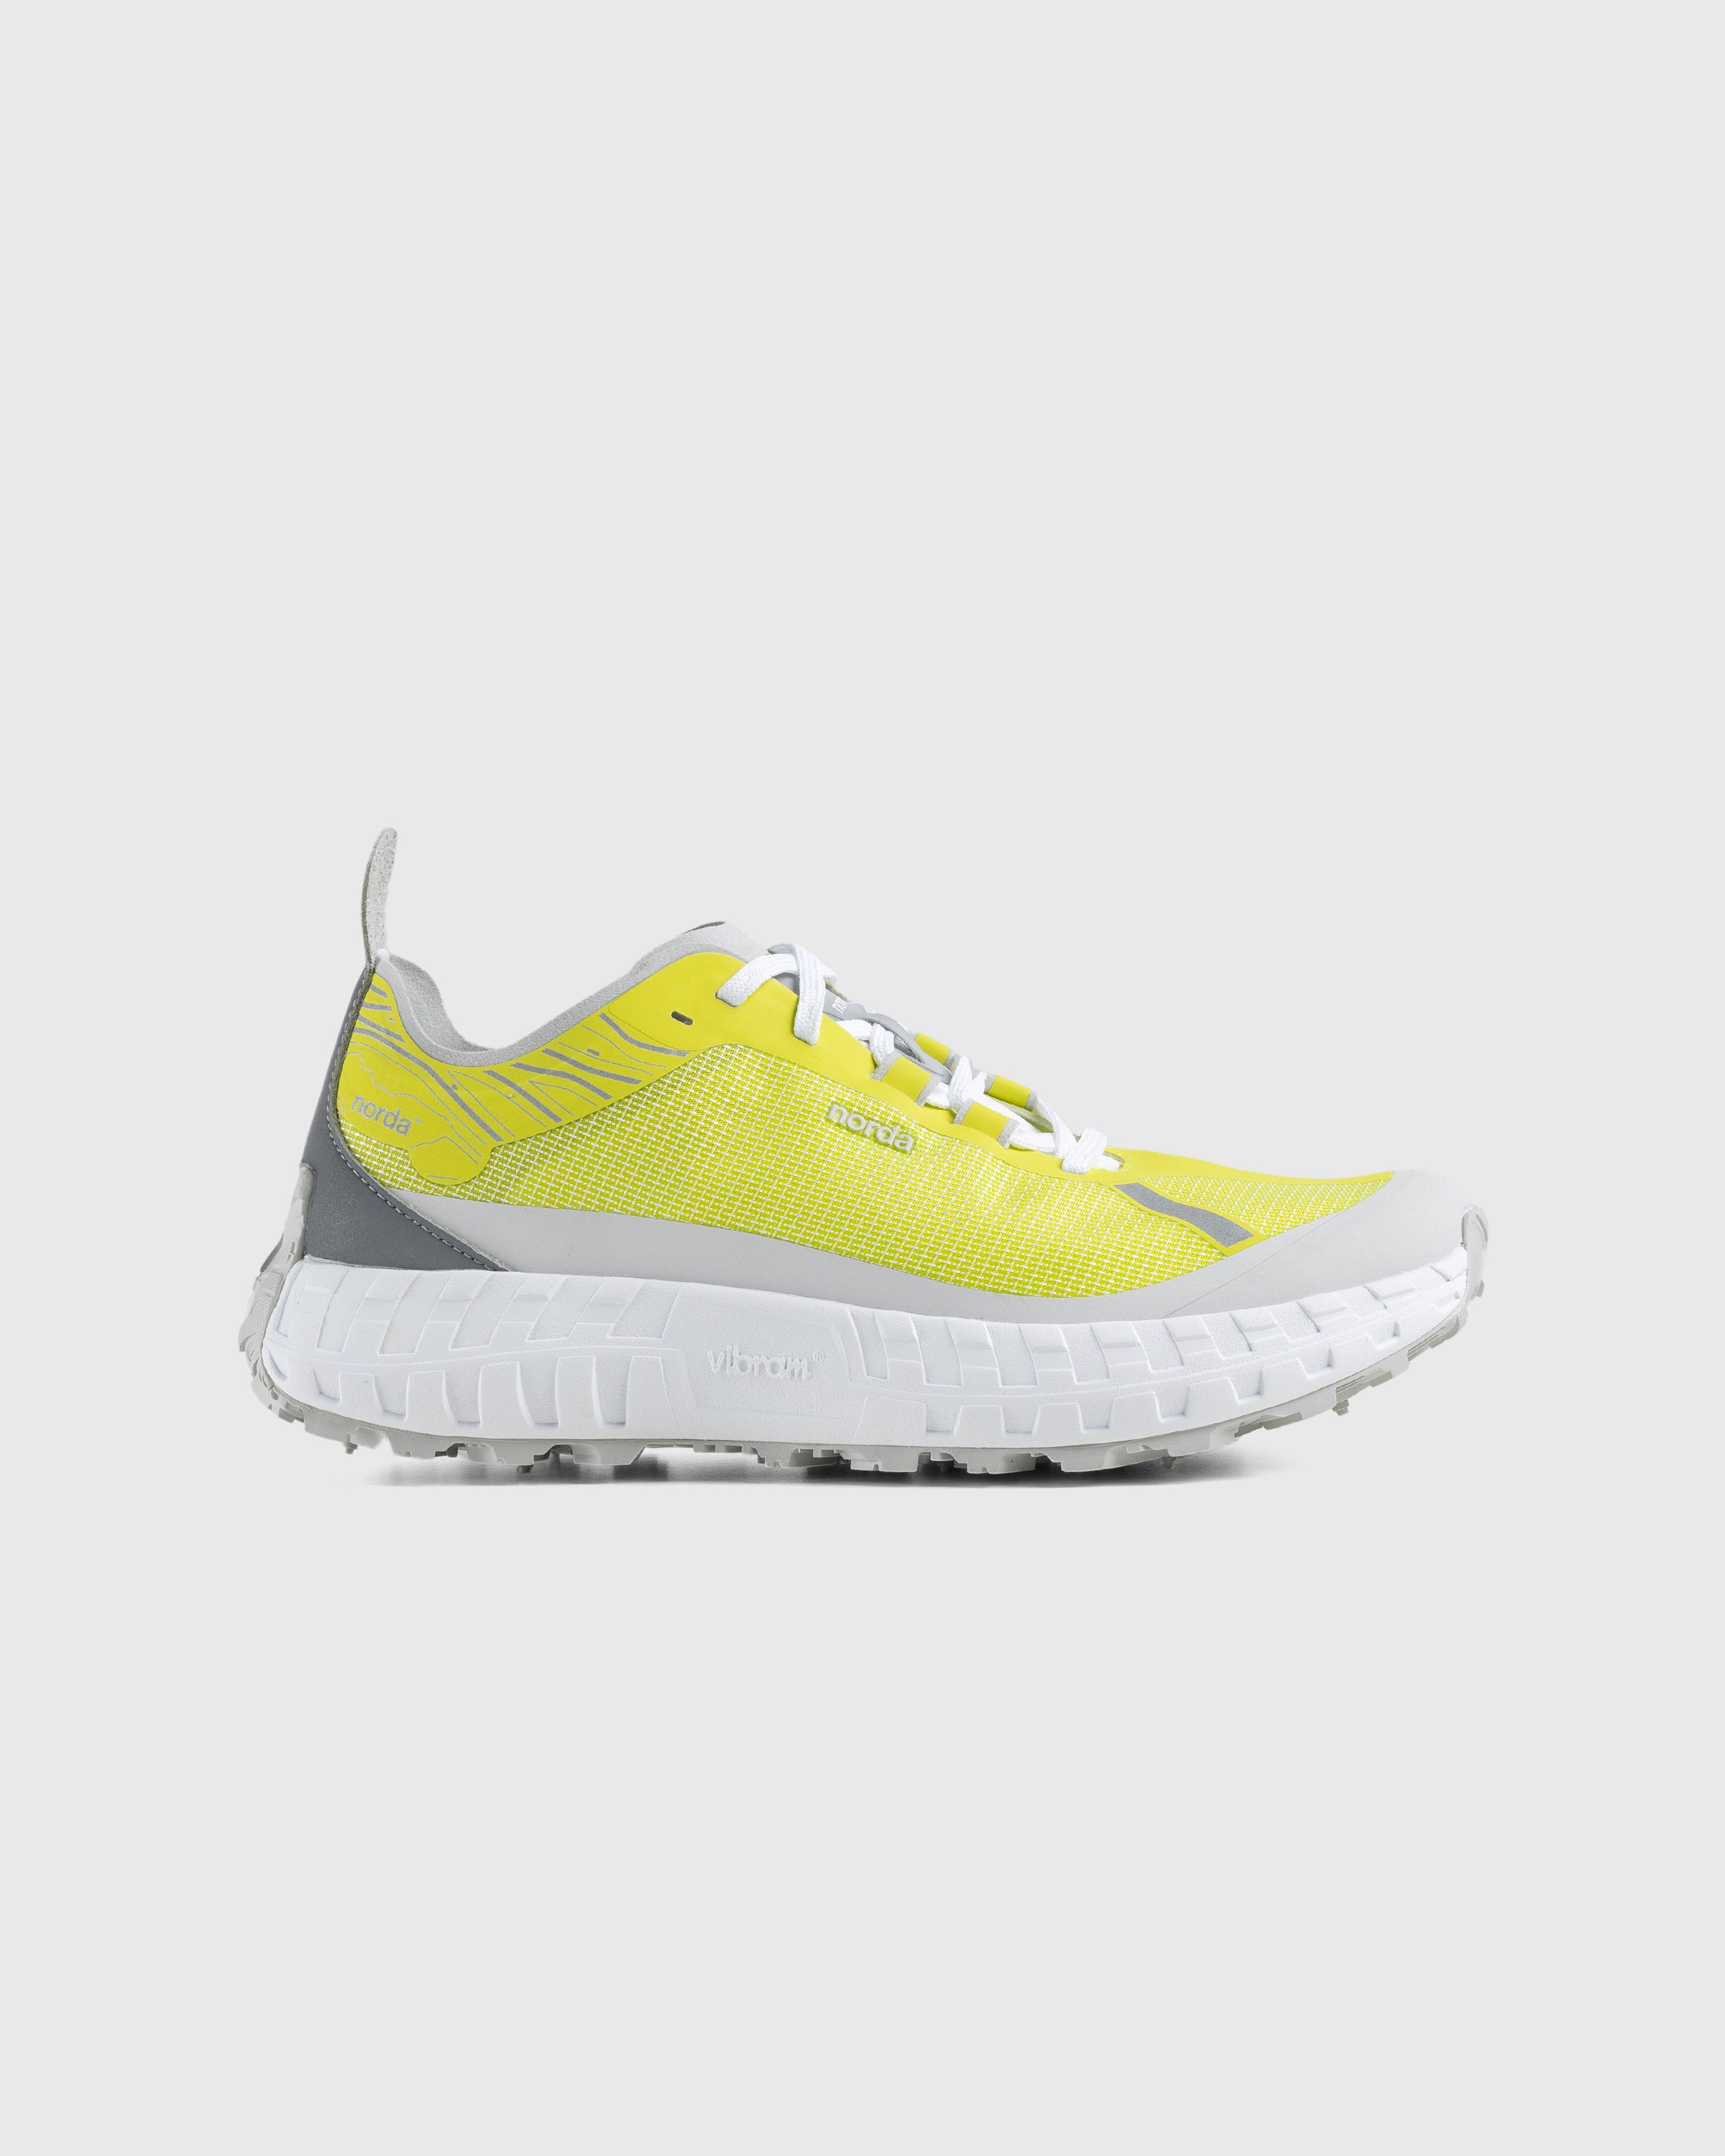 Norda - 001 M Sulphur - Footwear - Yellow - Image 1